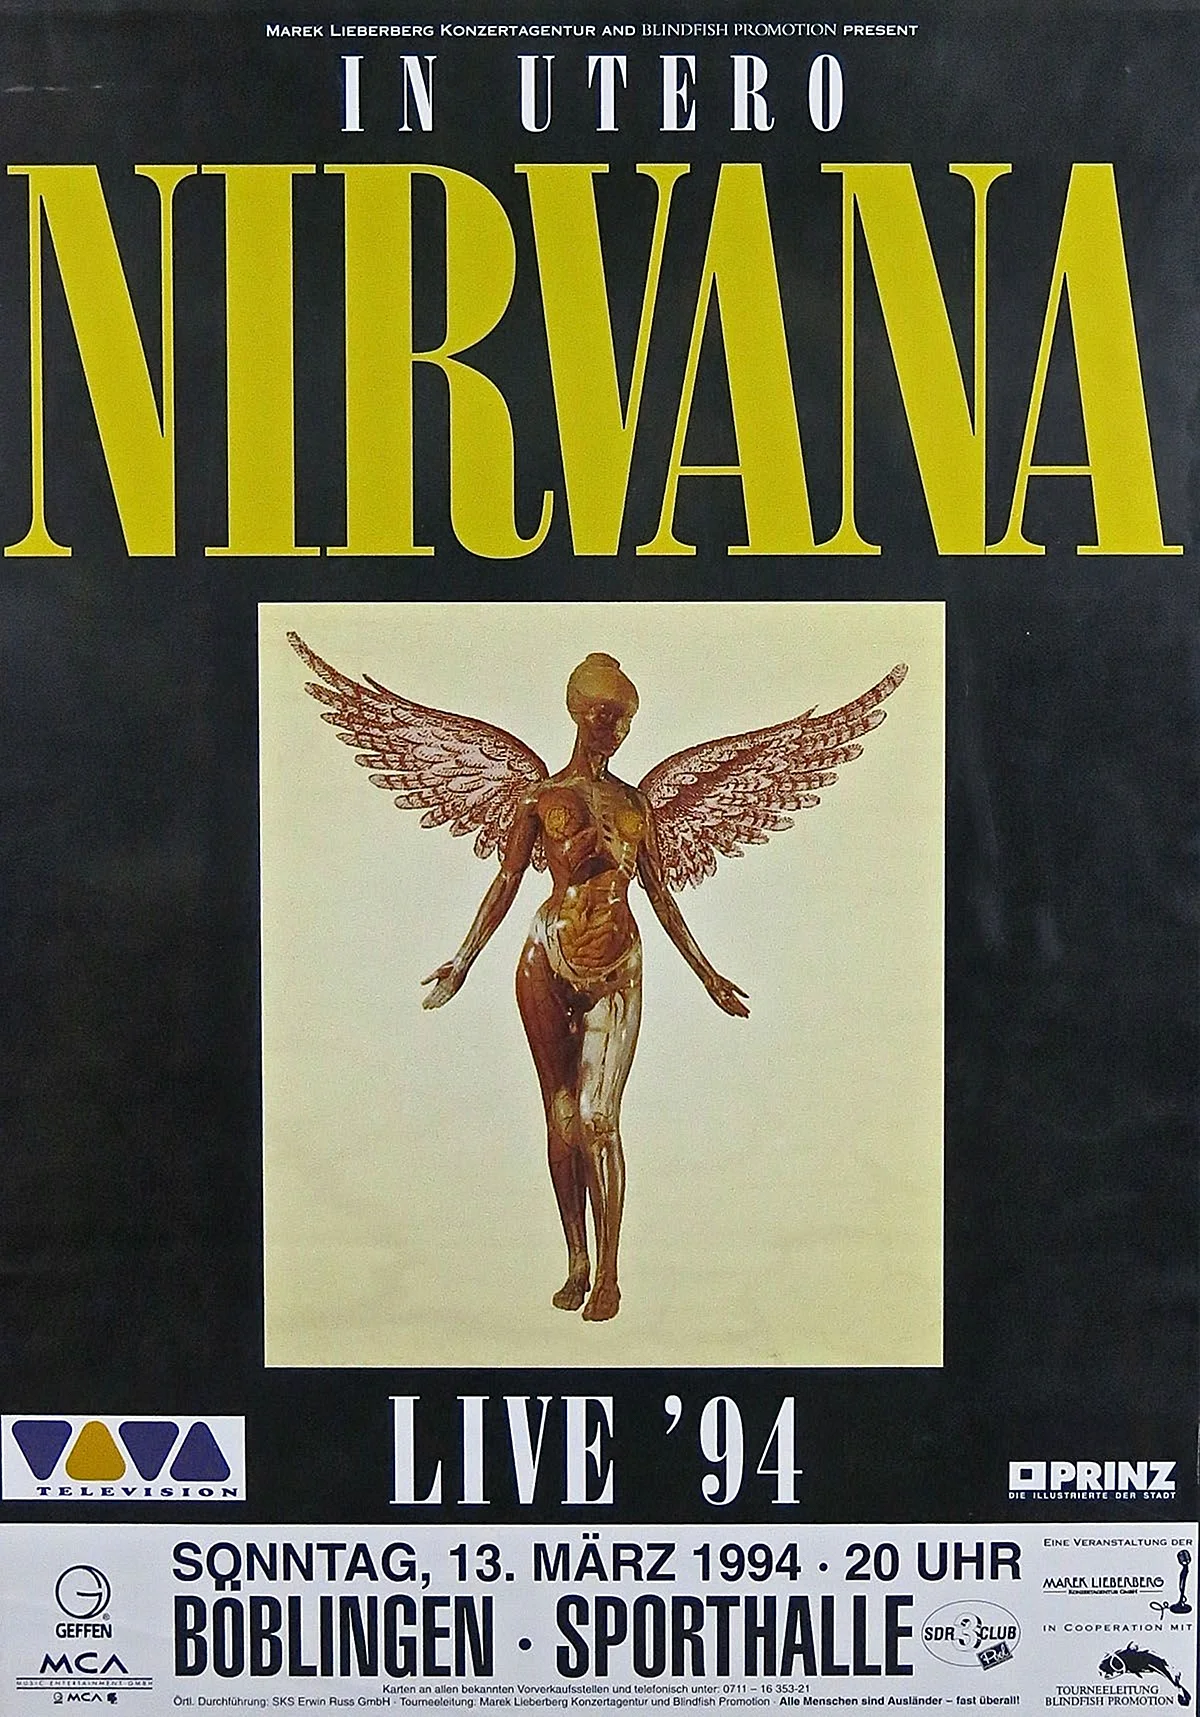 Постер Nirvana